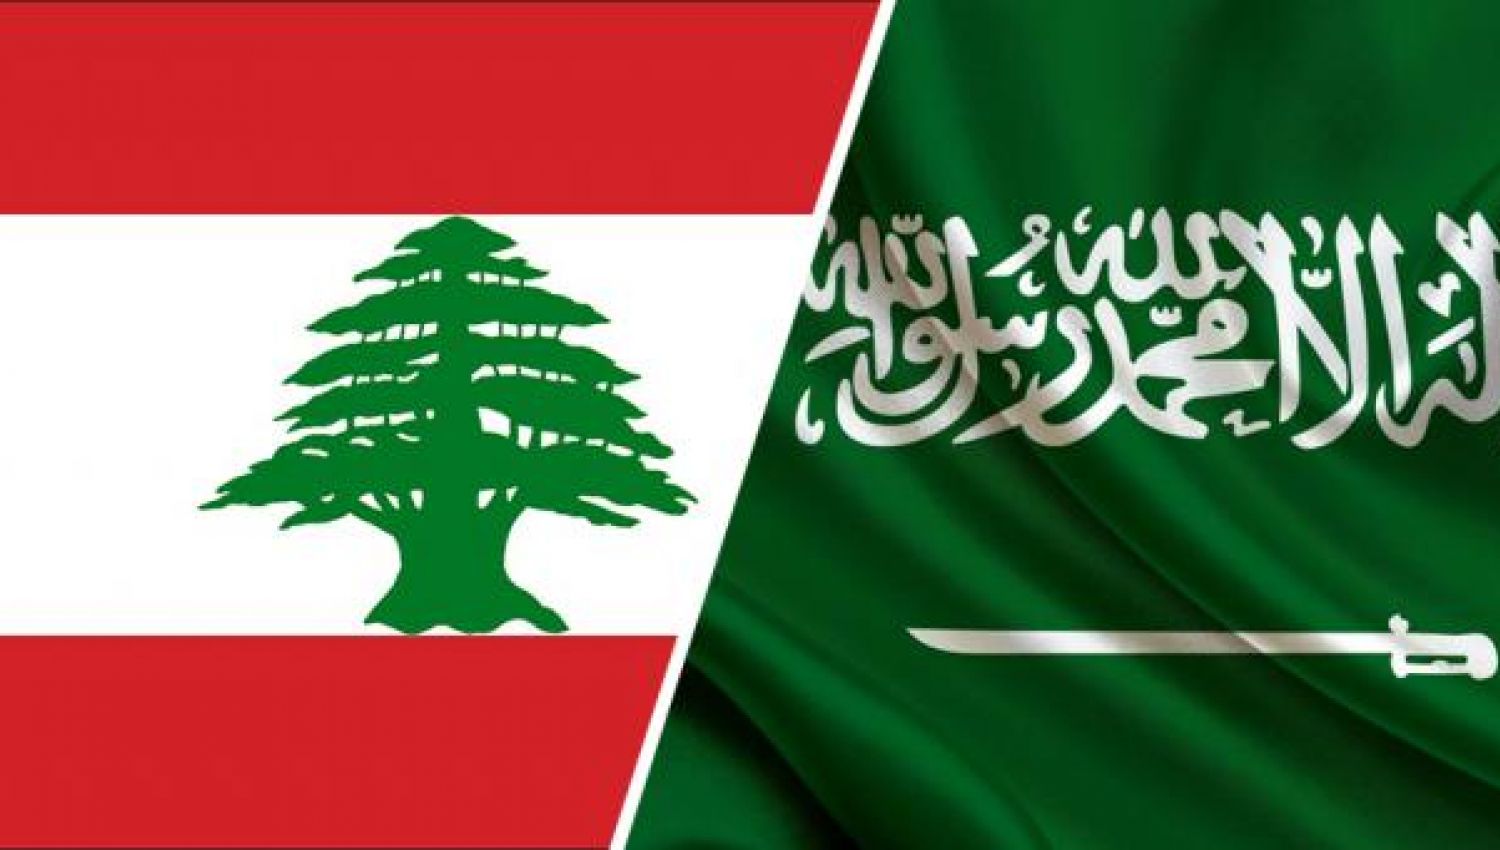 التسويات الكبرى لم تنضج بعد.. والسعودية تمنع الحل في لبنان